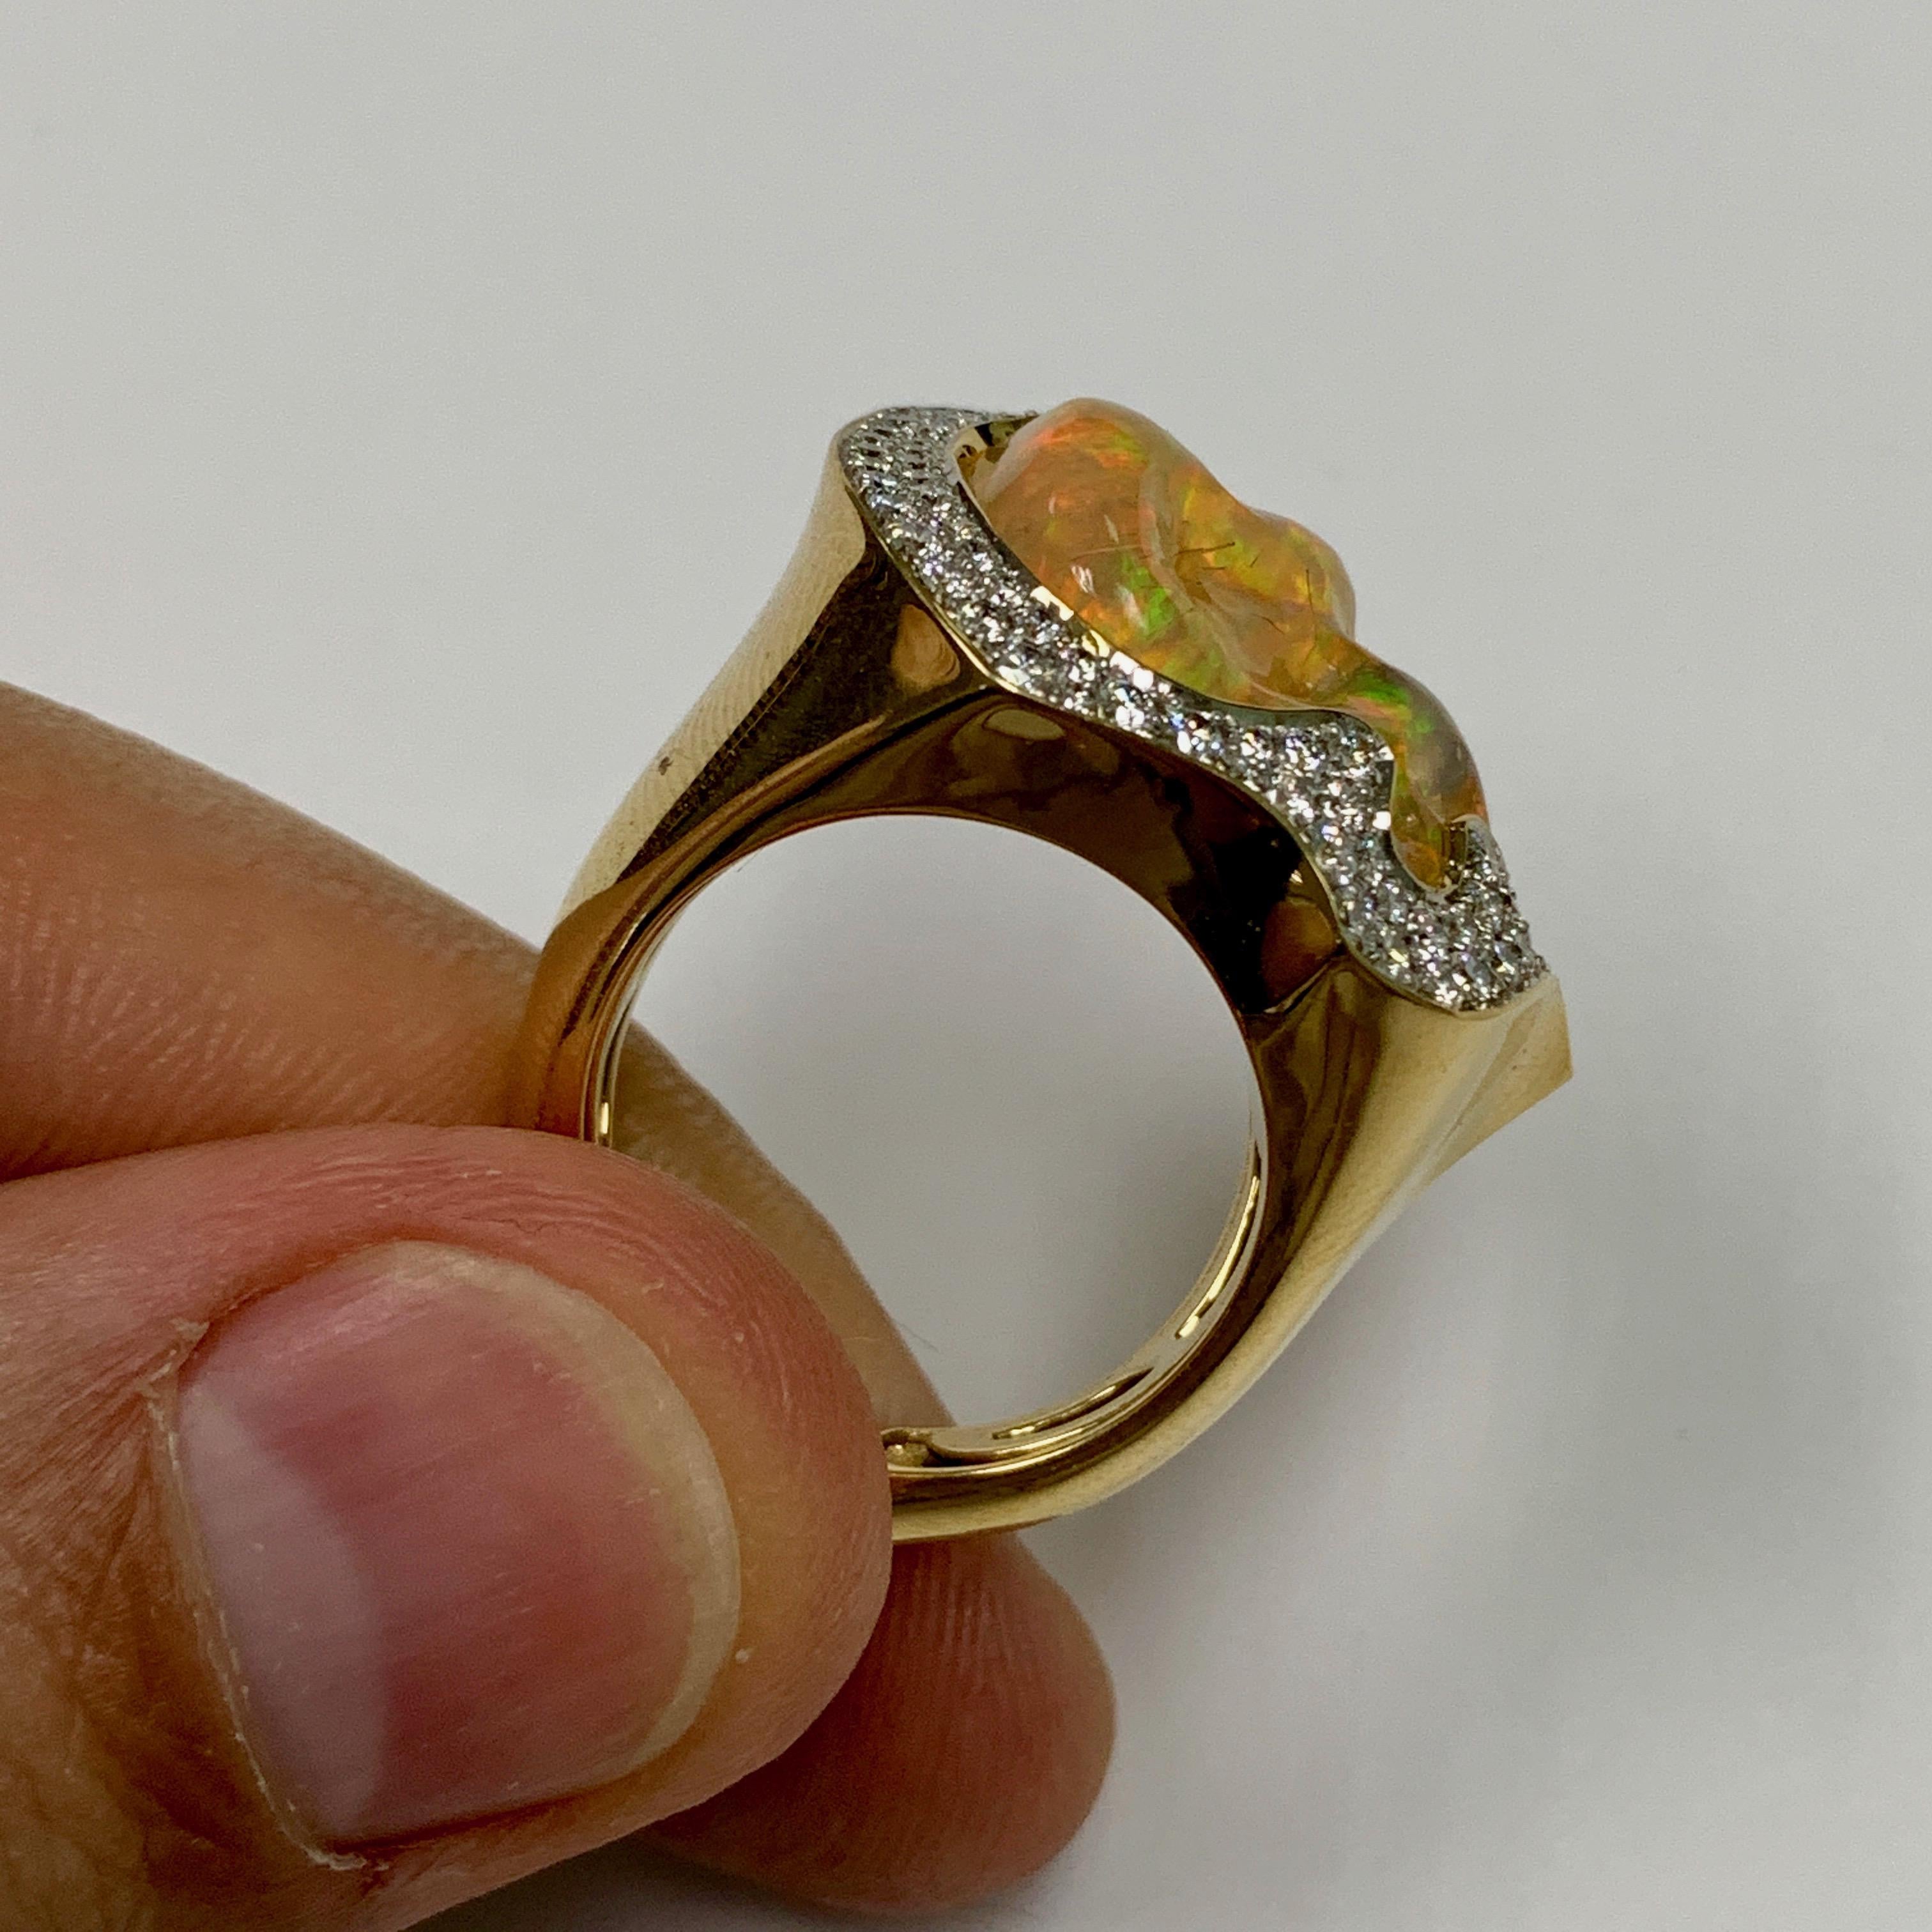 gold ring price in ksa